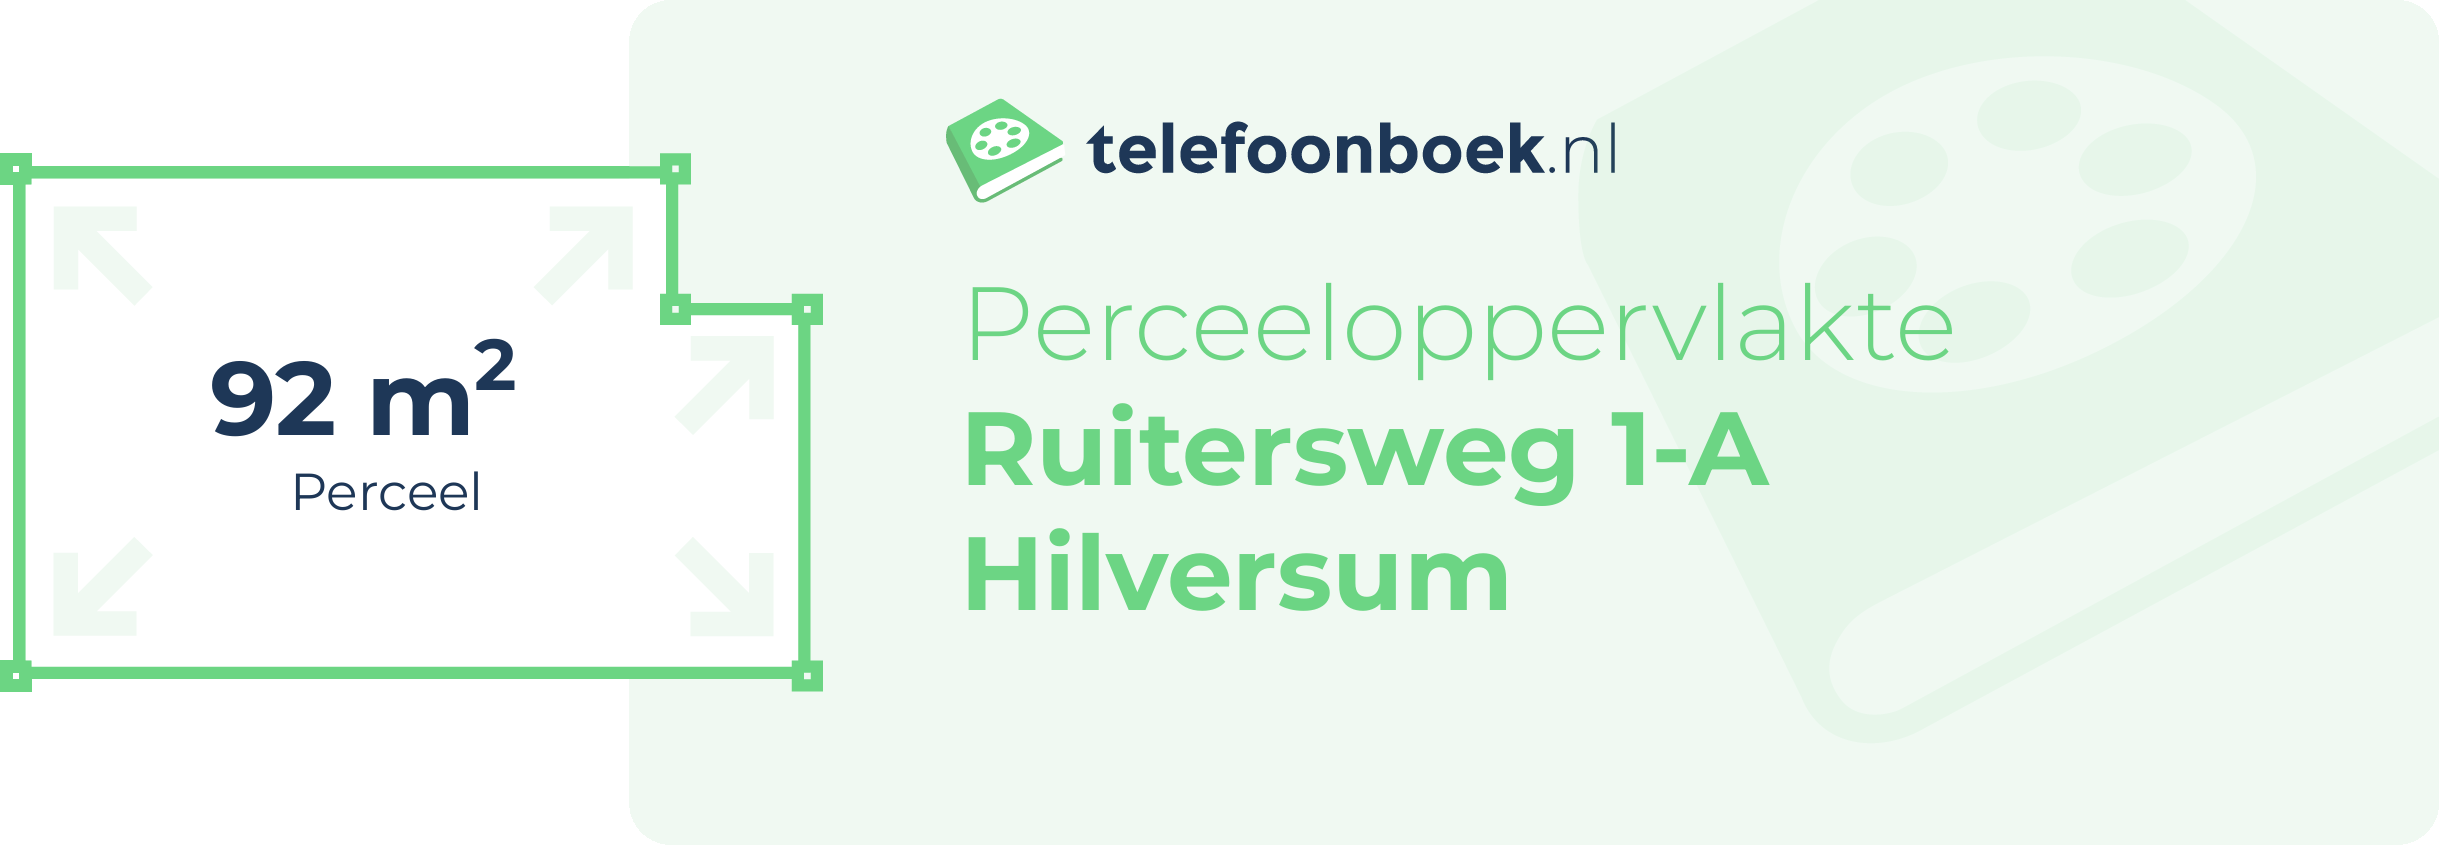 Perceeloppervlakte Ruitersweg 1-A Hilversum